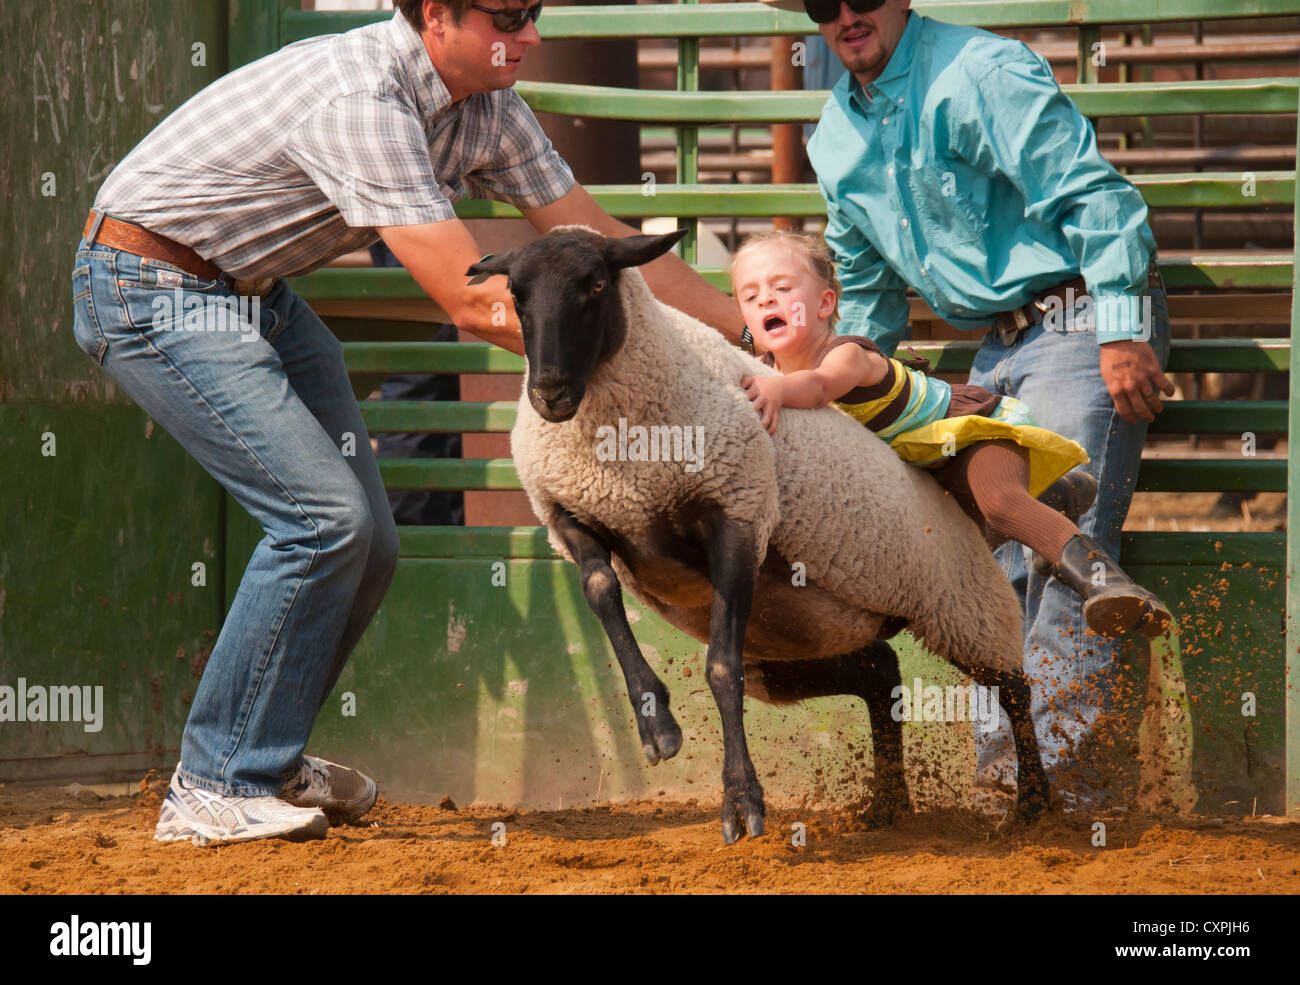 Les jeunes moutons en équitation cowgirl Mutton Busting event, Rodeo, Bruneau, California, USA Banque D'Images